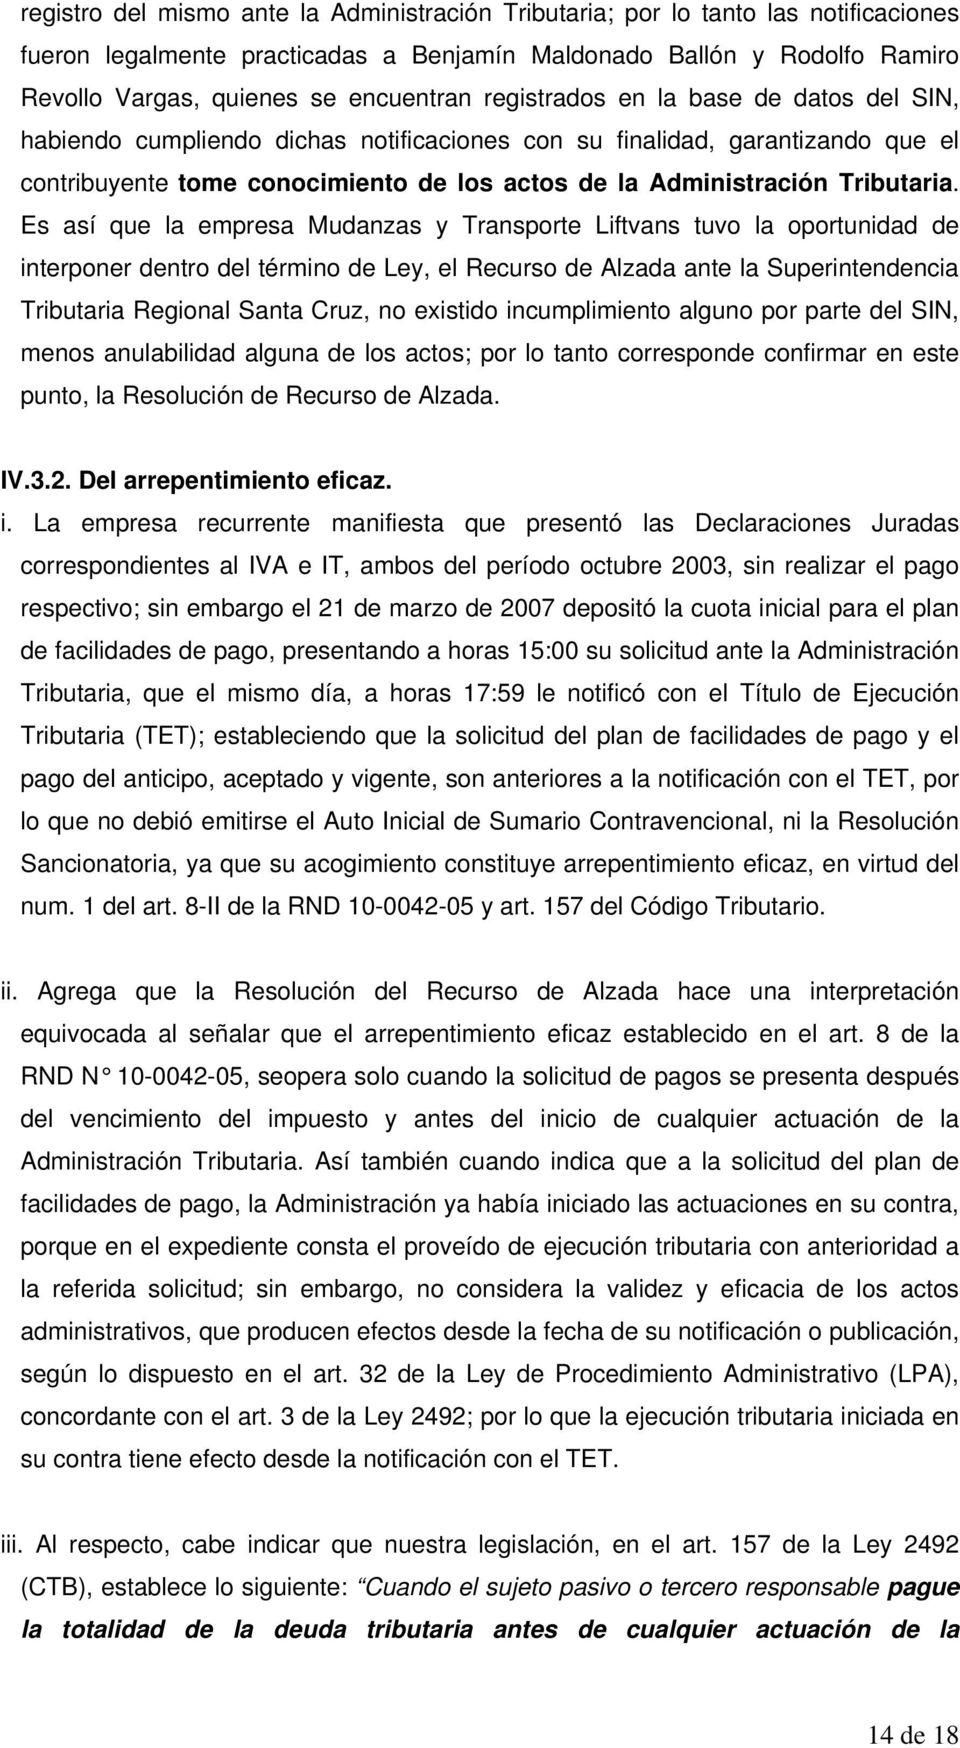 Es así que la empresa Mudanzas y Transporte Liftvans tuvo la oportunidad de interponer dentro del término de Ley, el Recurso de Alzada ante la Superintendencia Tributaria Regional Santa Cruz, no